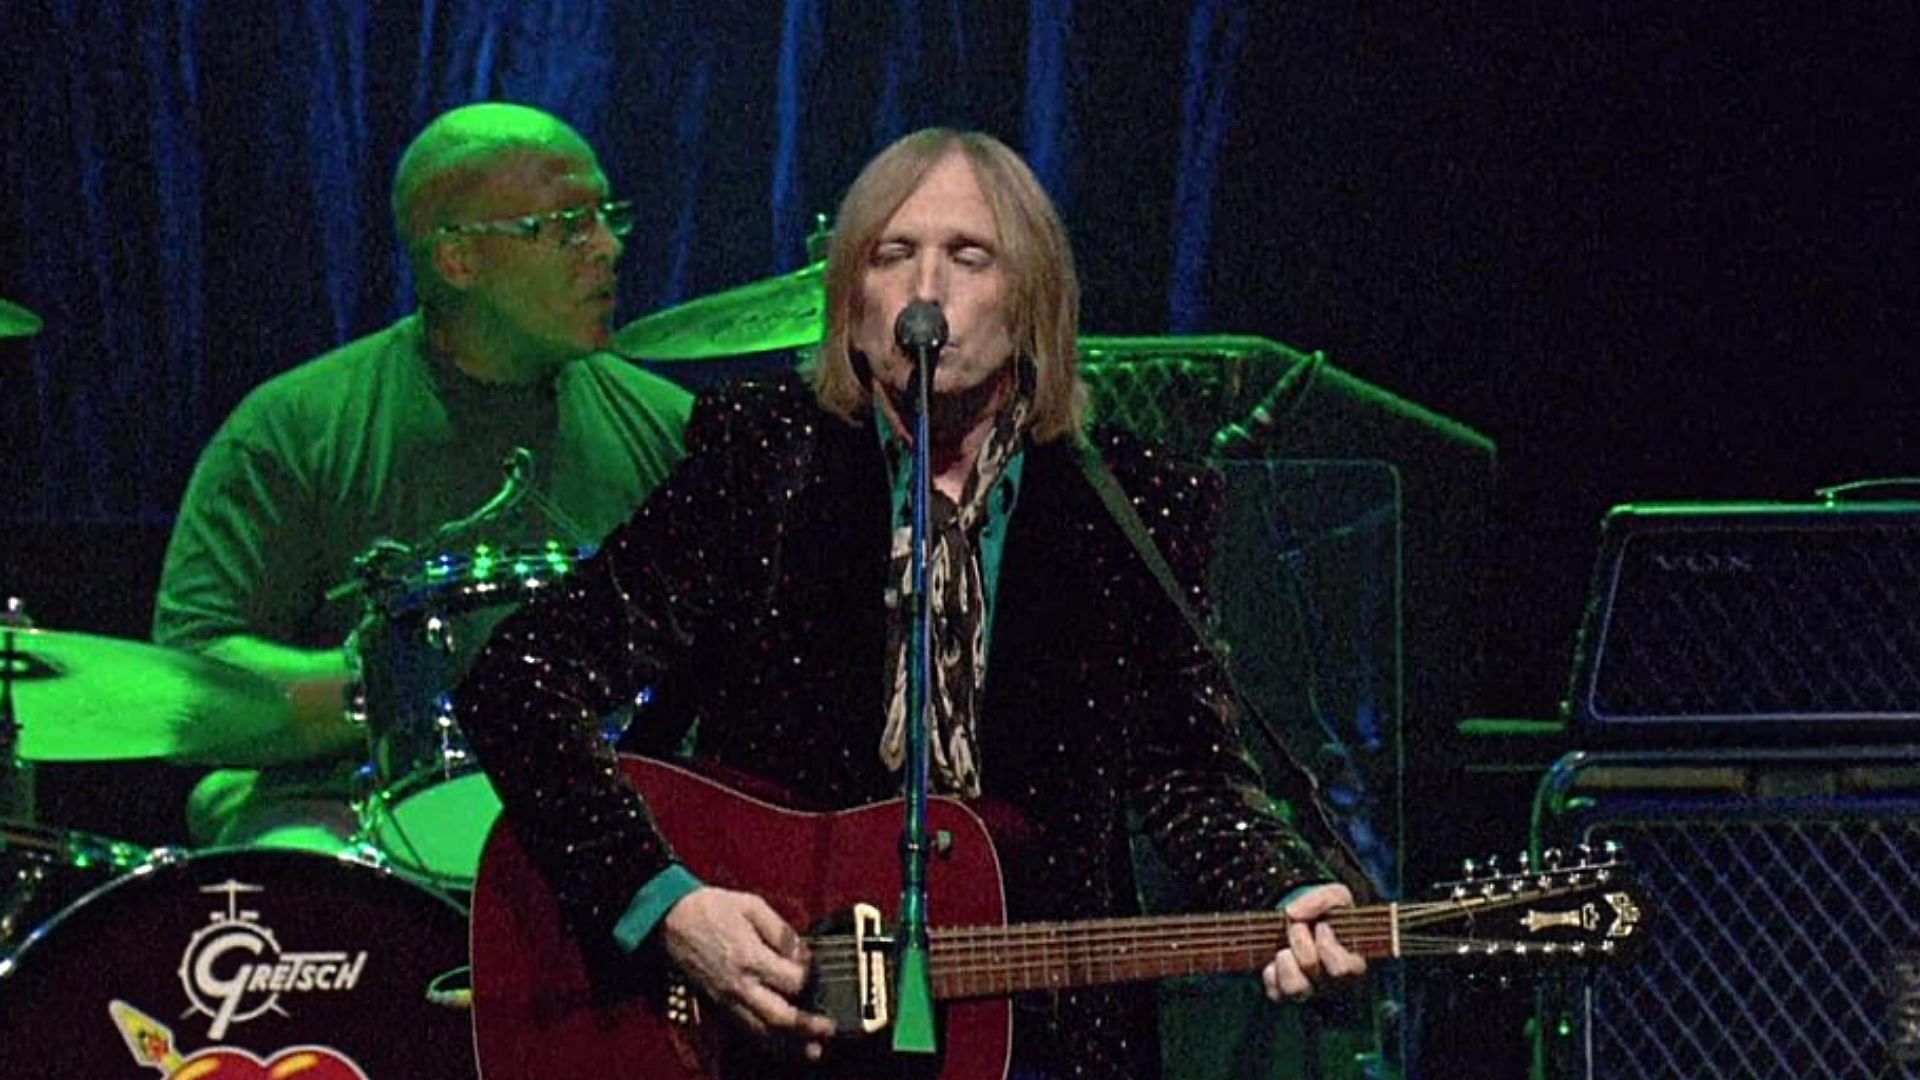 Tom Petty performing a song (Image via imdb.com)